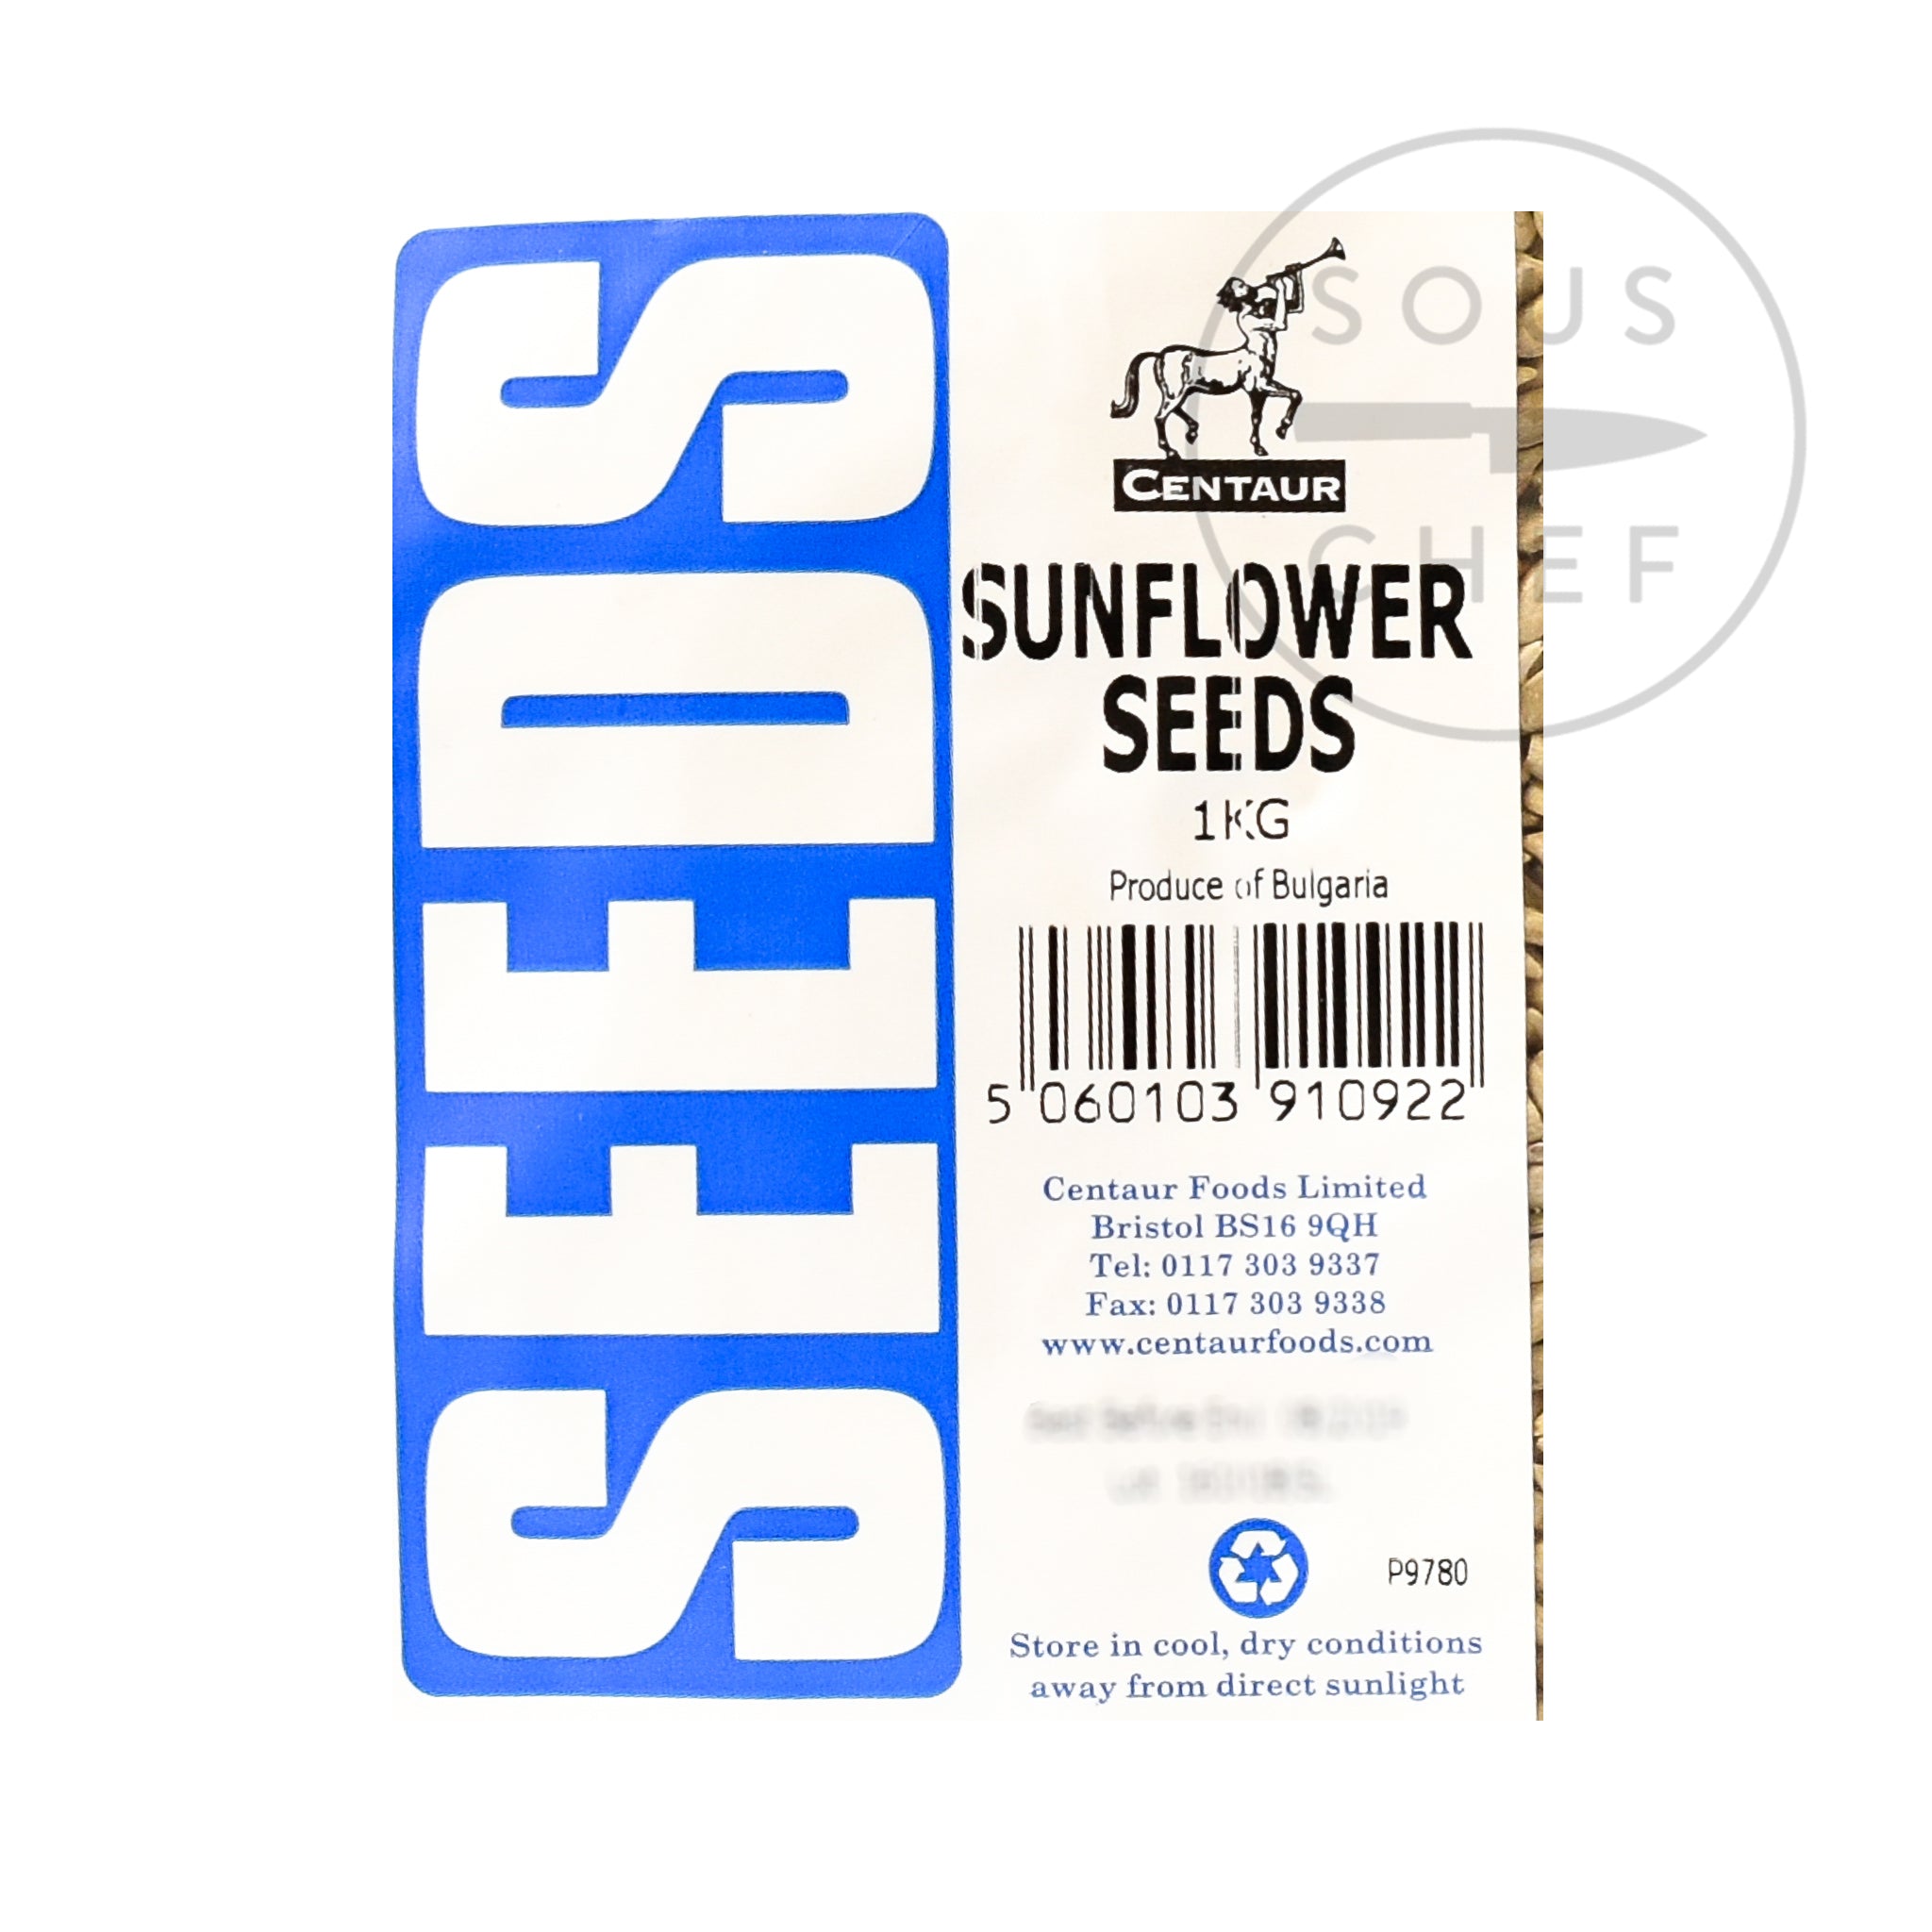 Sunflower Seeds 1kg ingredients